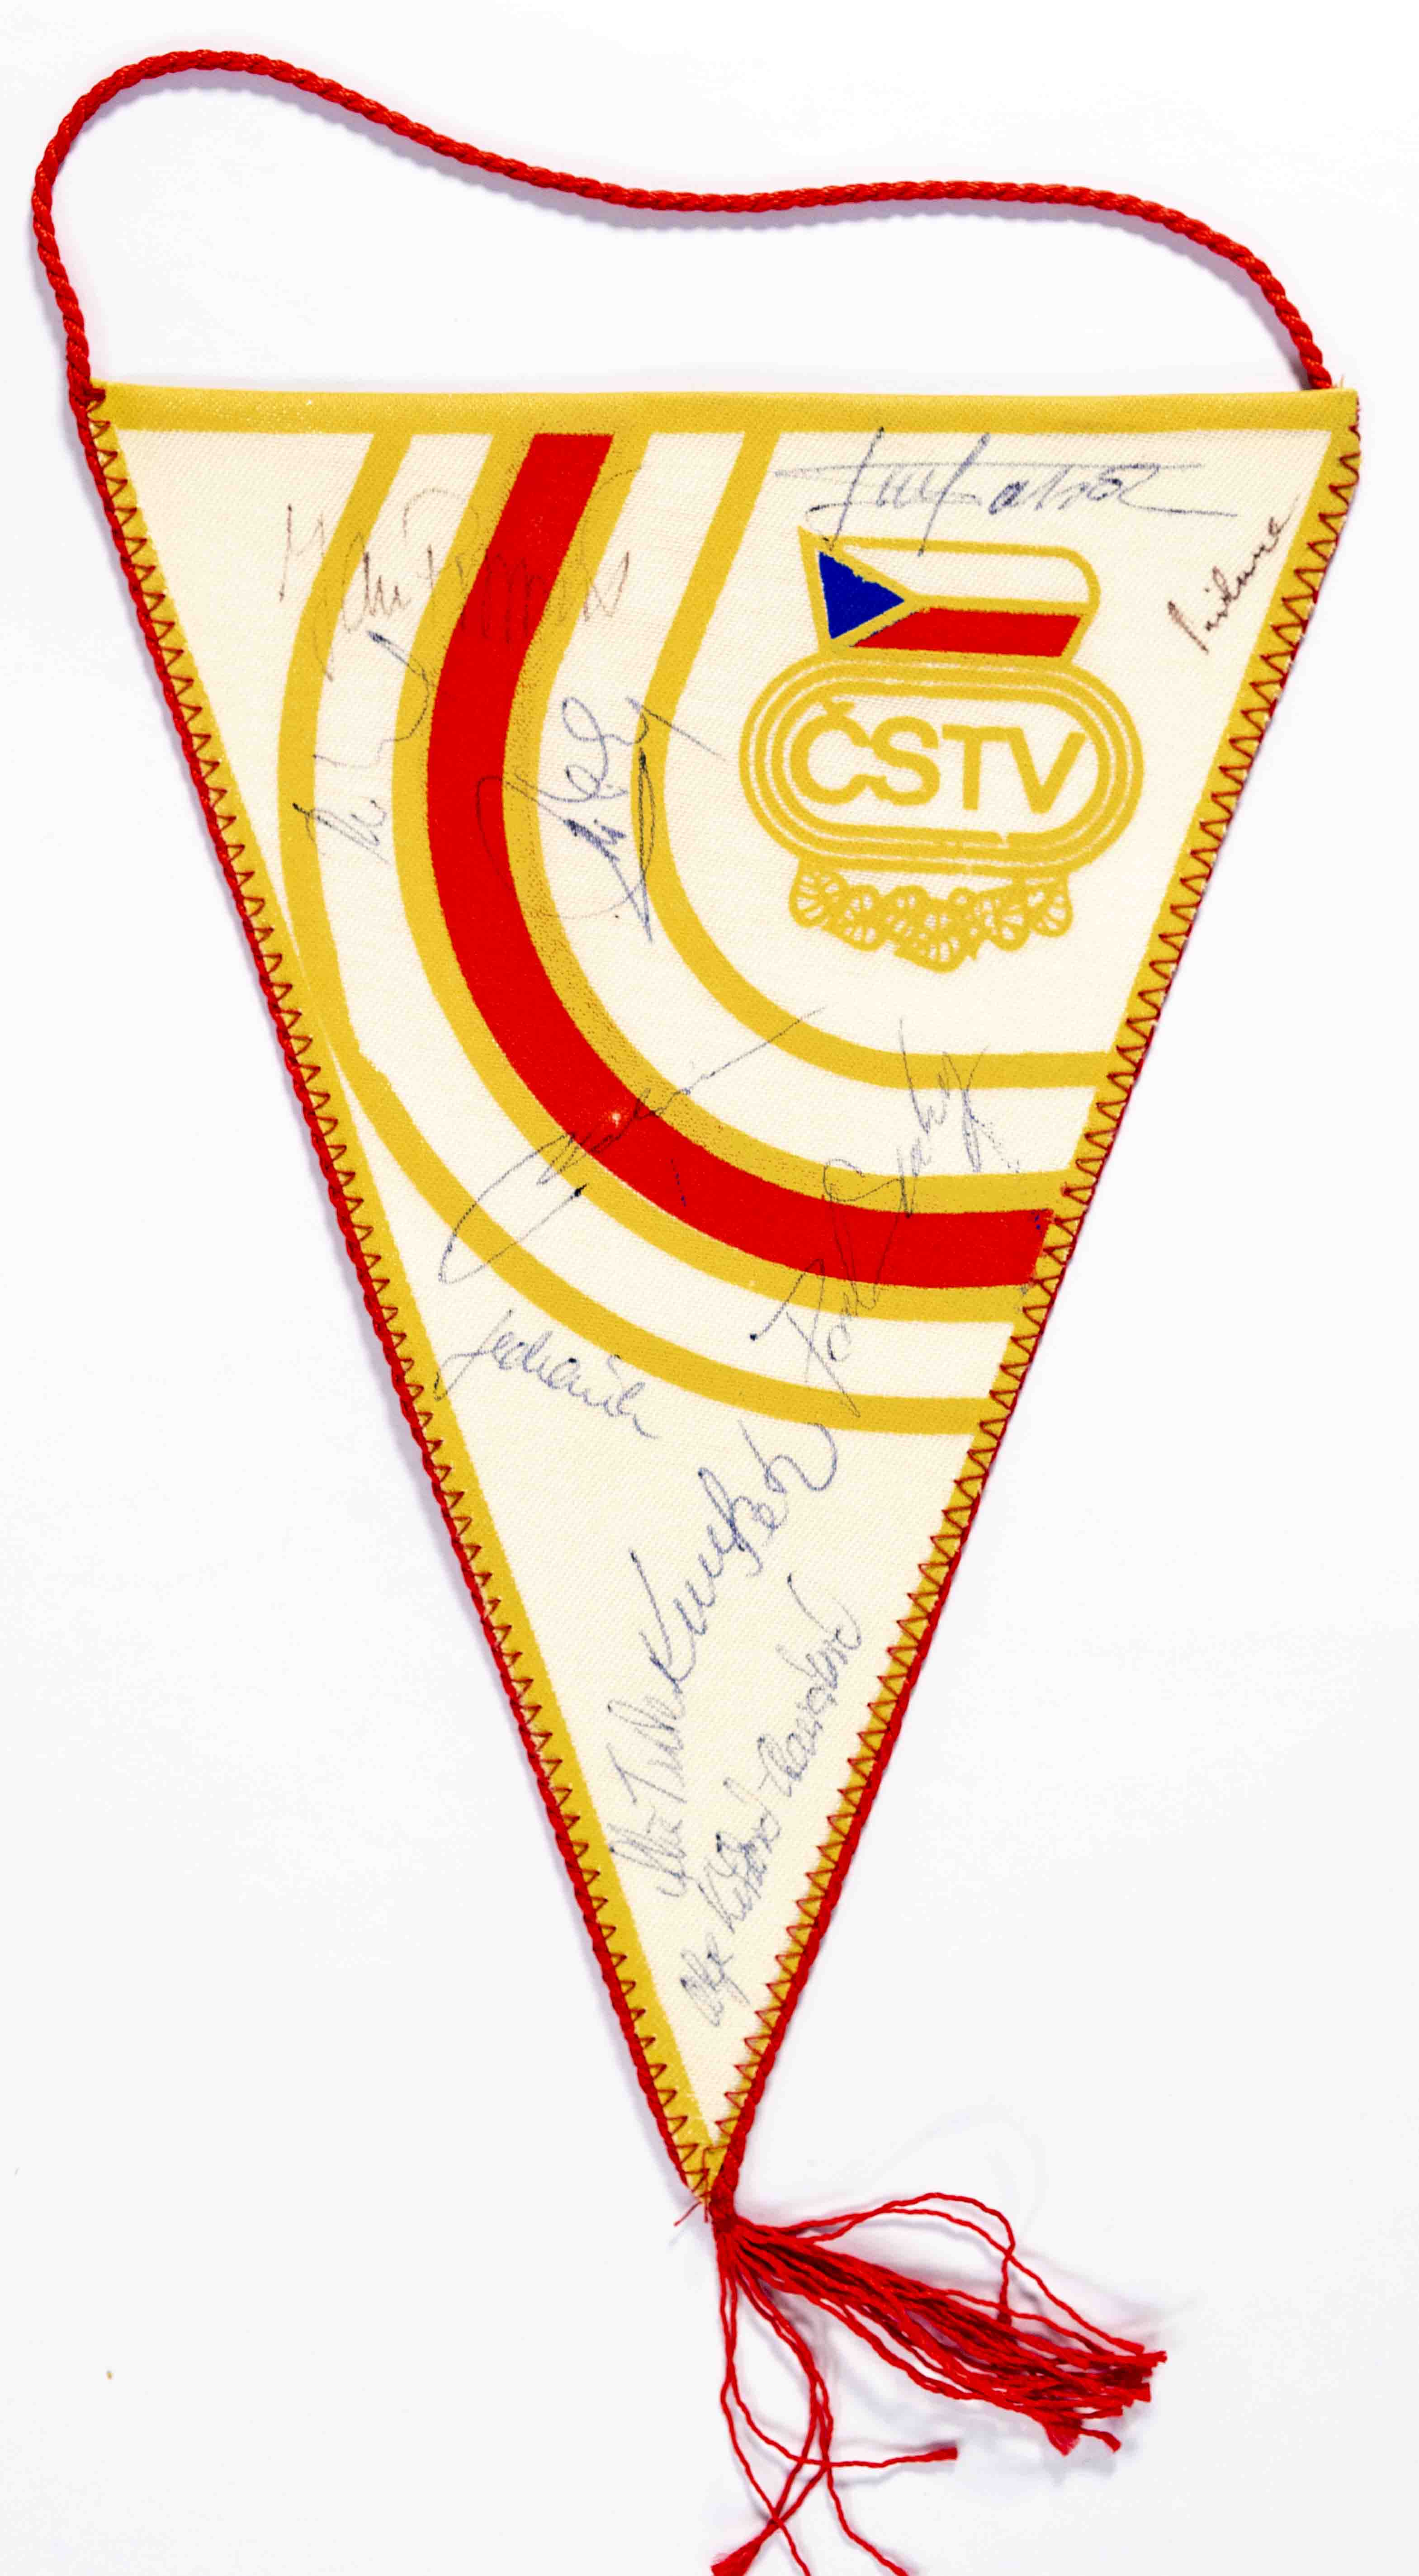 Vlajka ČSTV od sportovců ČSSR, autogramy